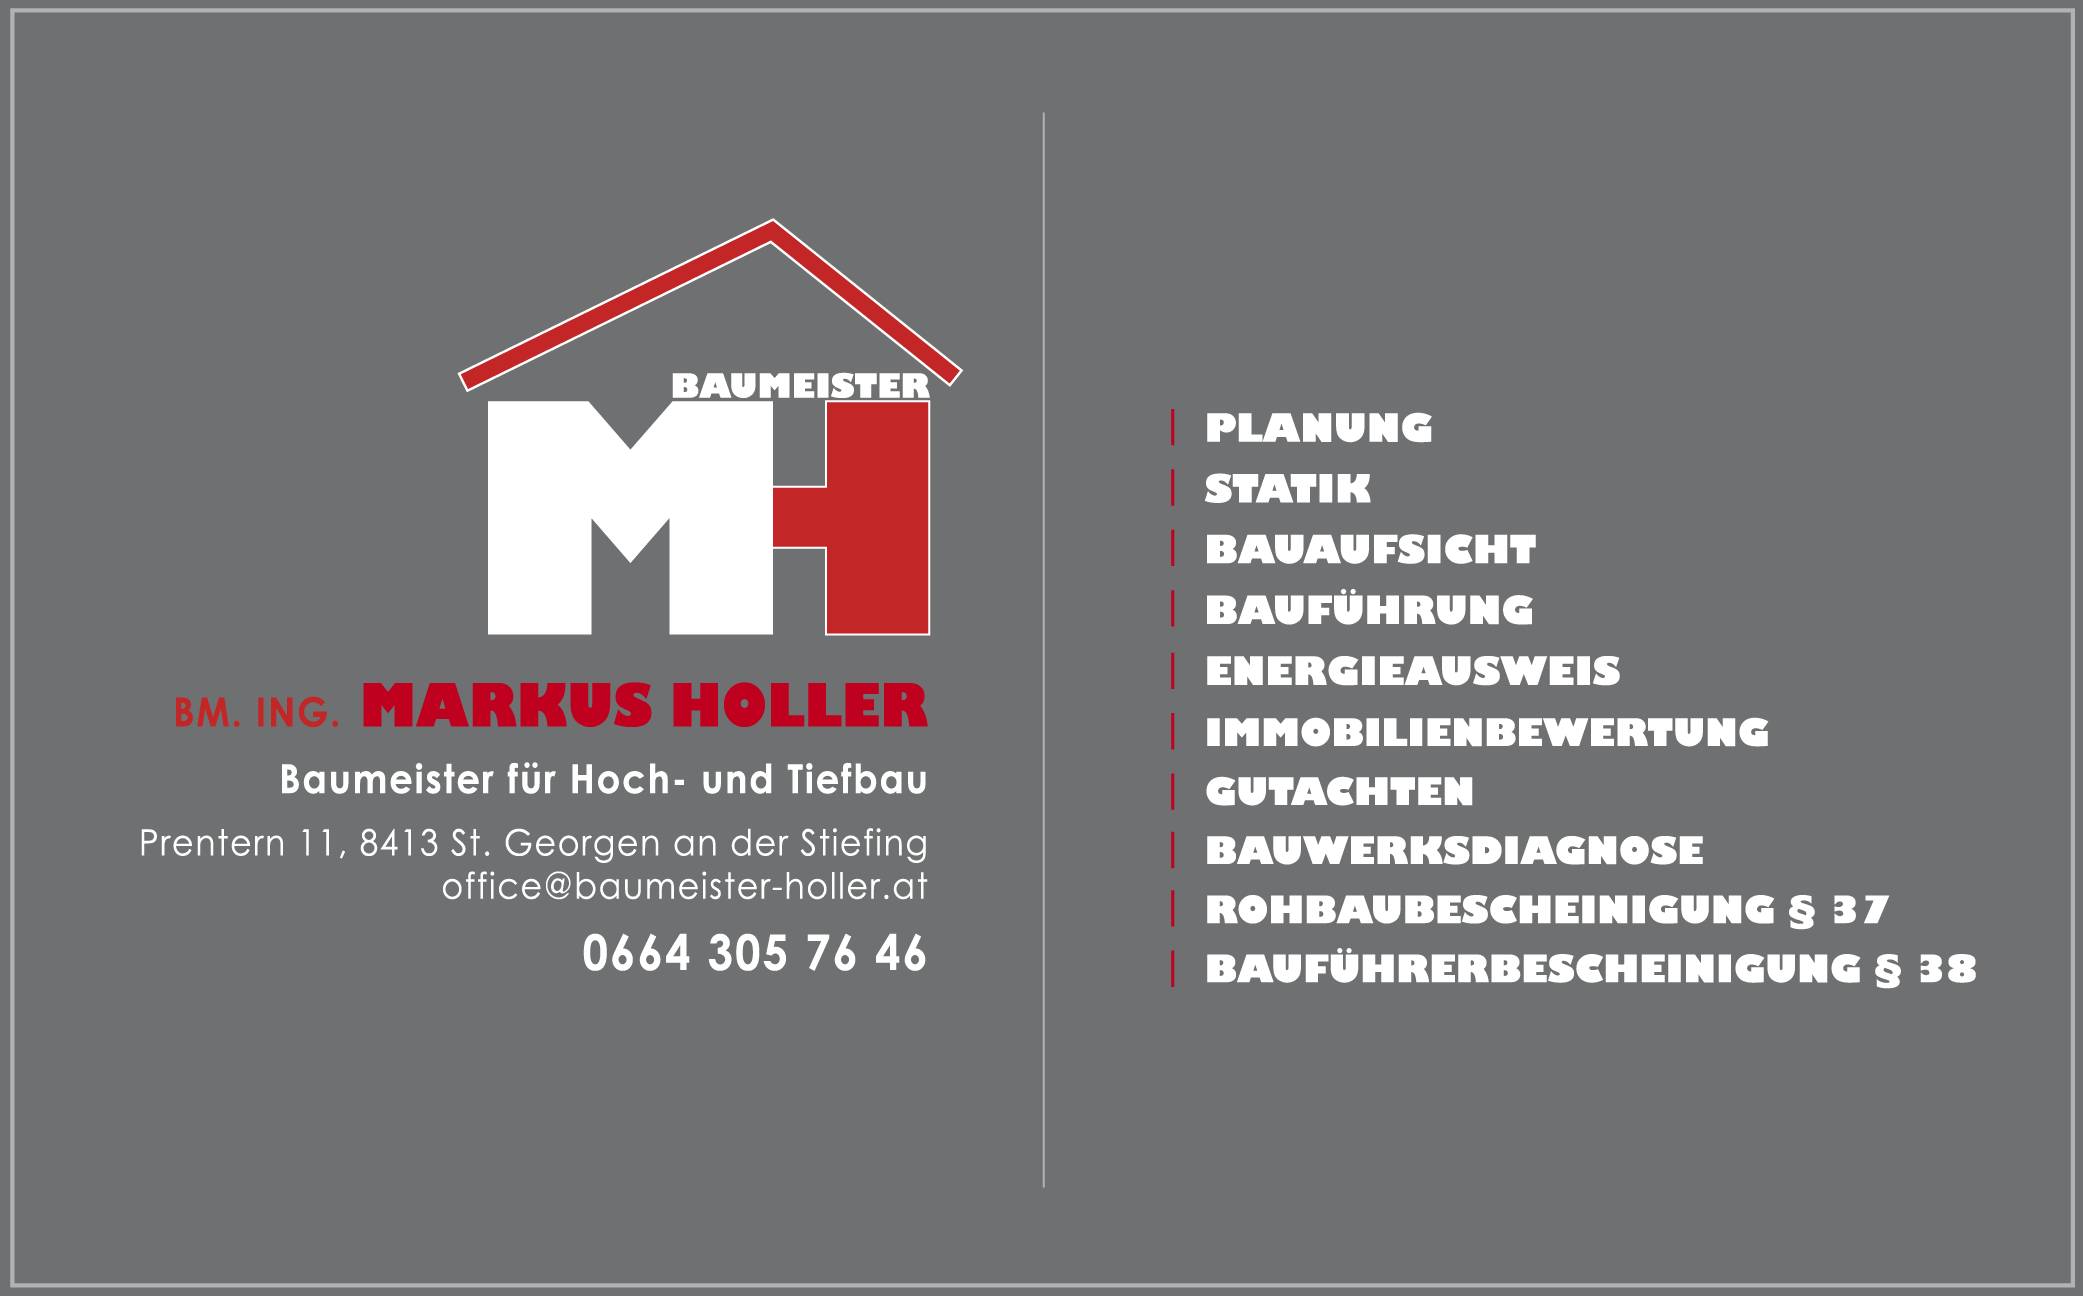 BM. ING. Markus Holler | Baumeister für Hoch- und Tiefbau in Leibnitz. Kontakt: office@baumeister-holler.at